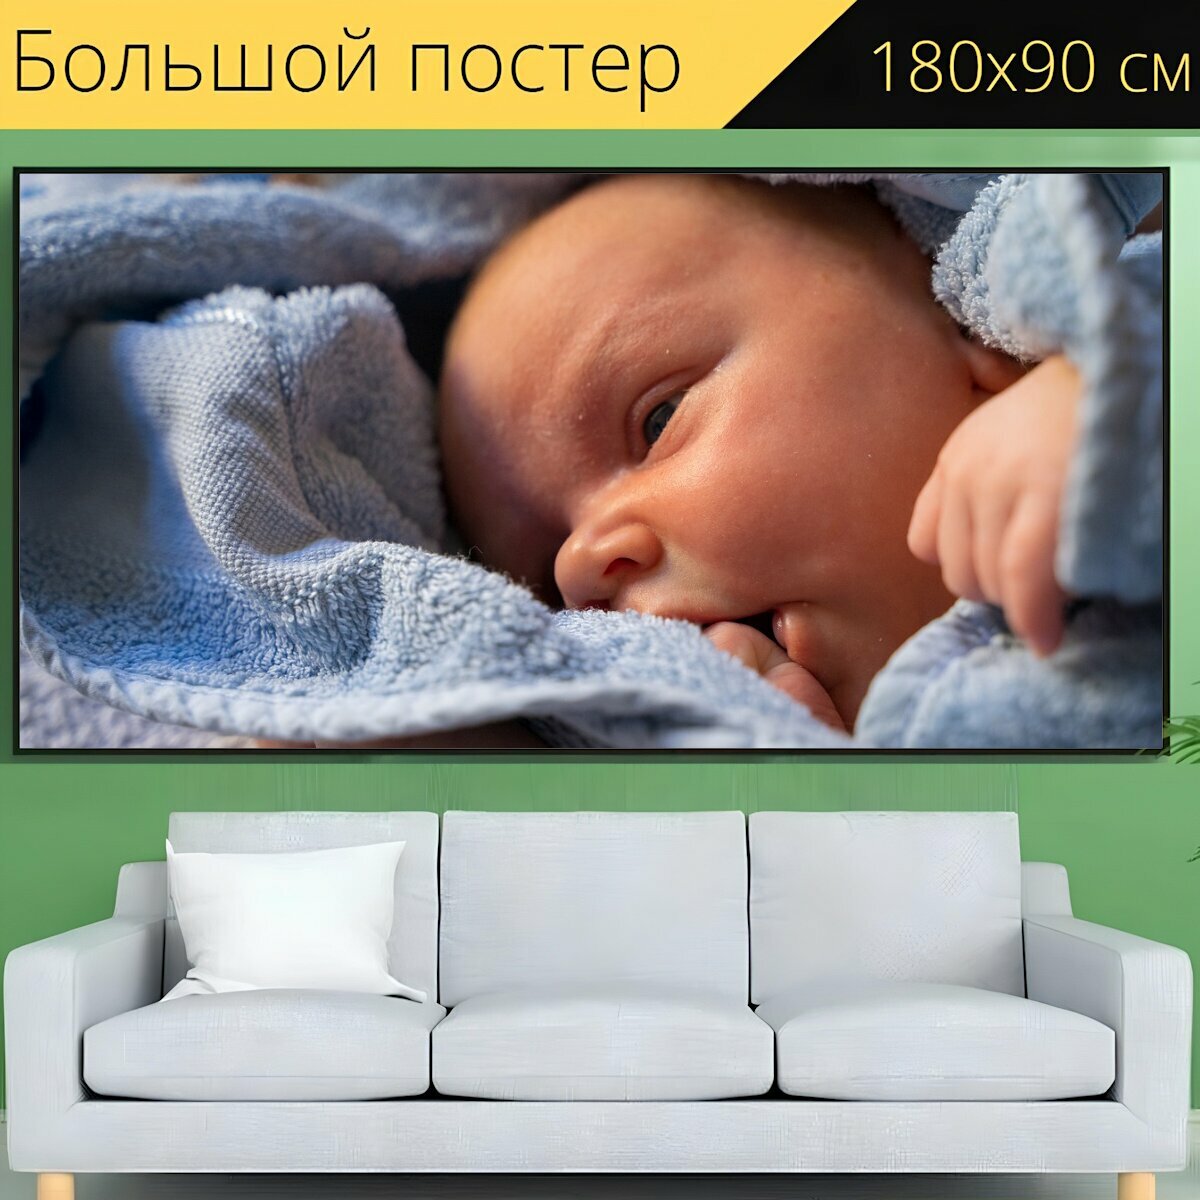 Большой постер "Младенец, новорожденный, новорожденные" 180 x 90 см. для интерьера